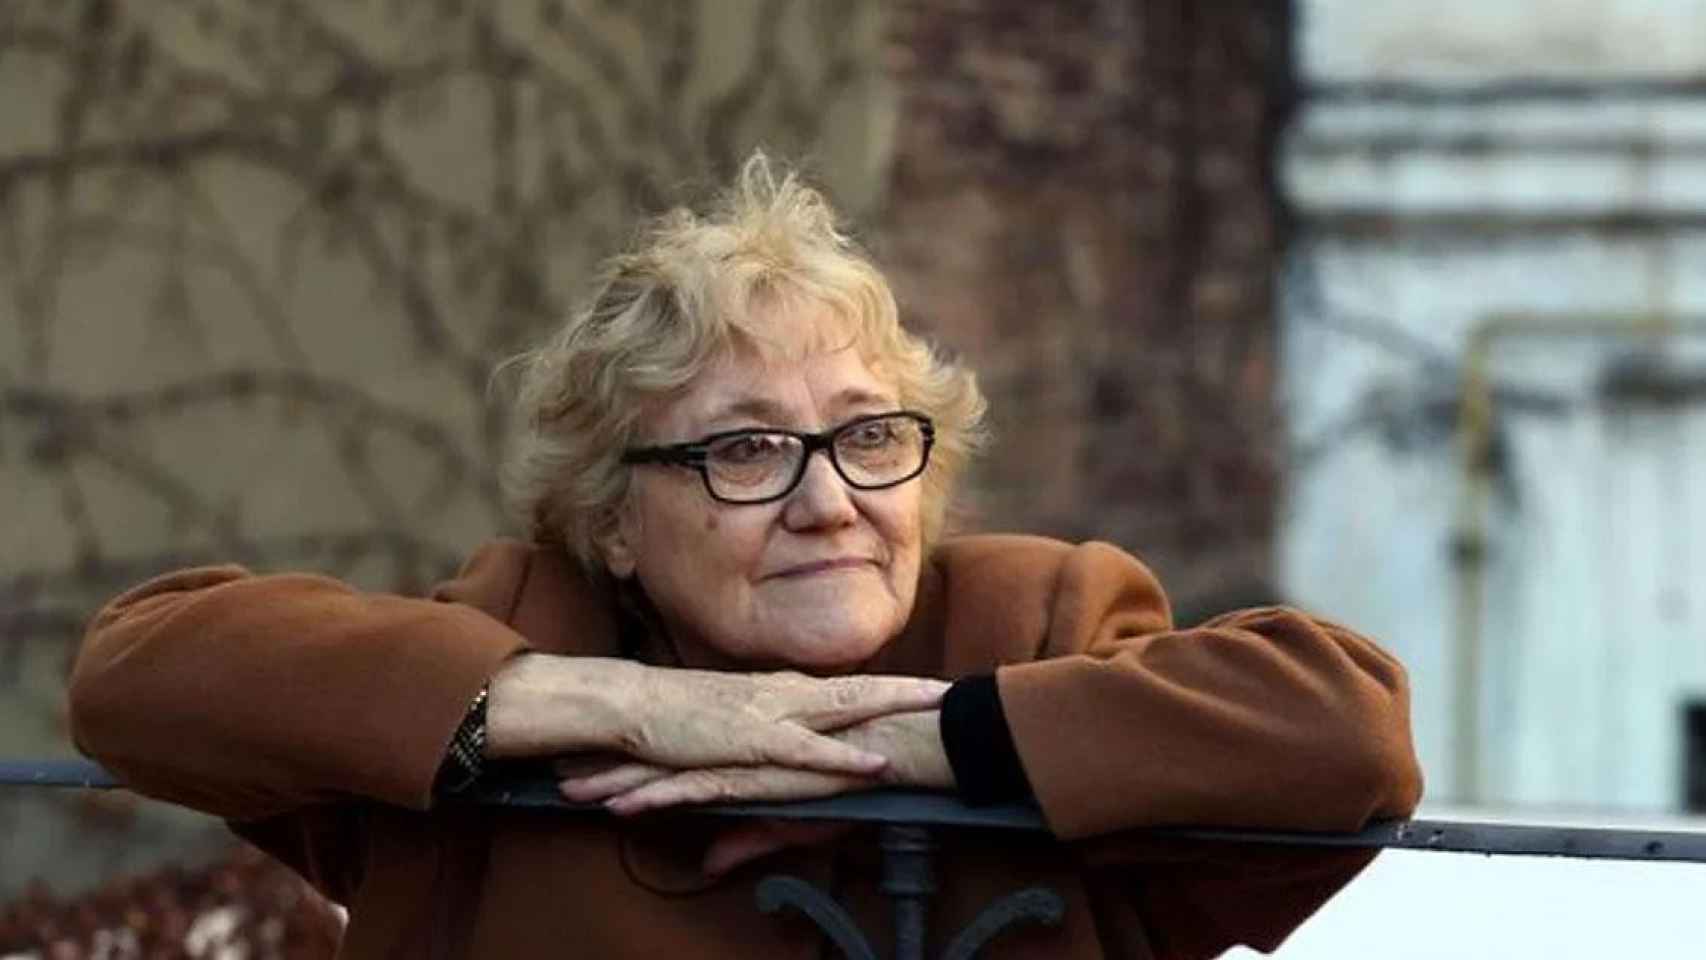 La escritora Isabel-Clara Simó, una de las voces más importantes de las letras catalanas modernas que ha muerto a los 76 años / EFE